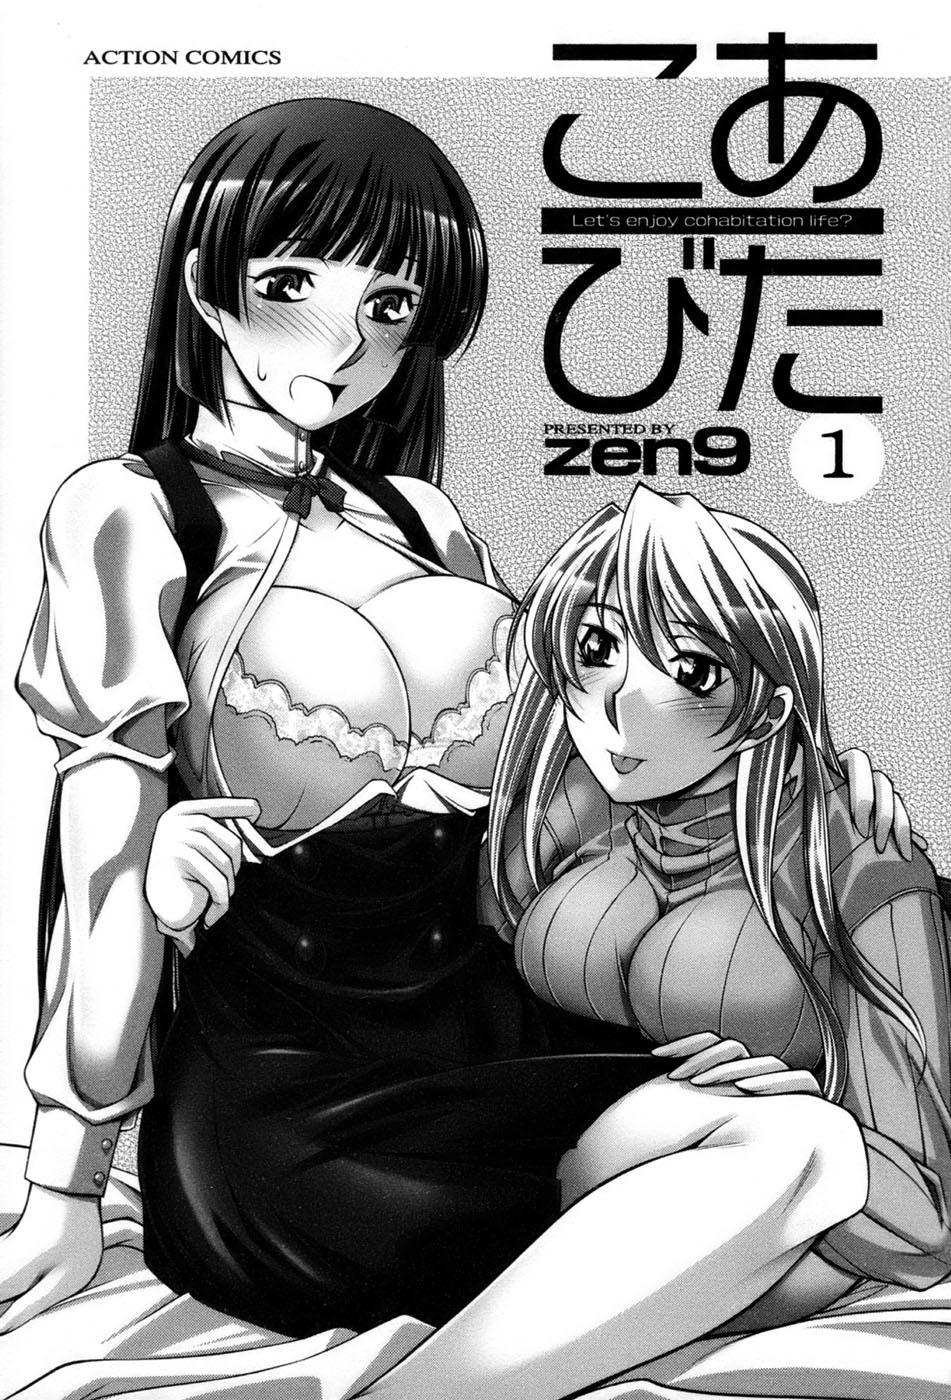 【zen9】コアビタ01